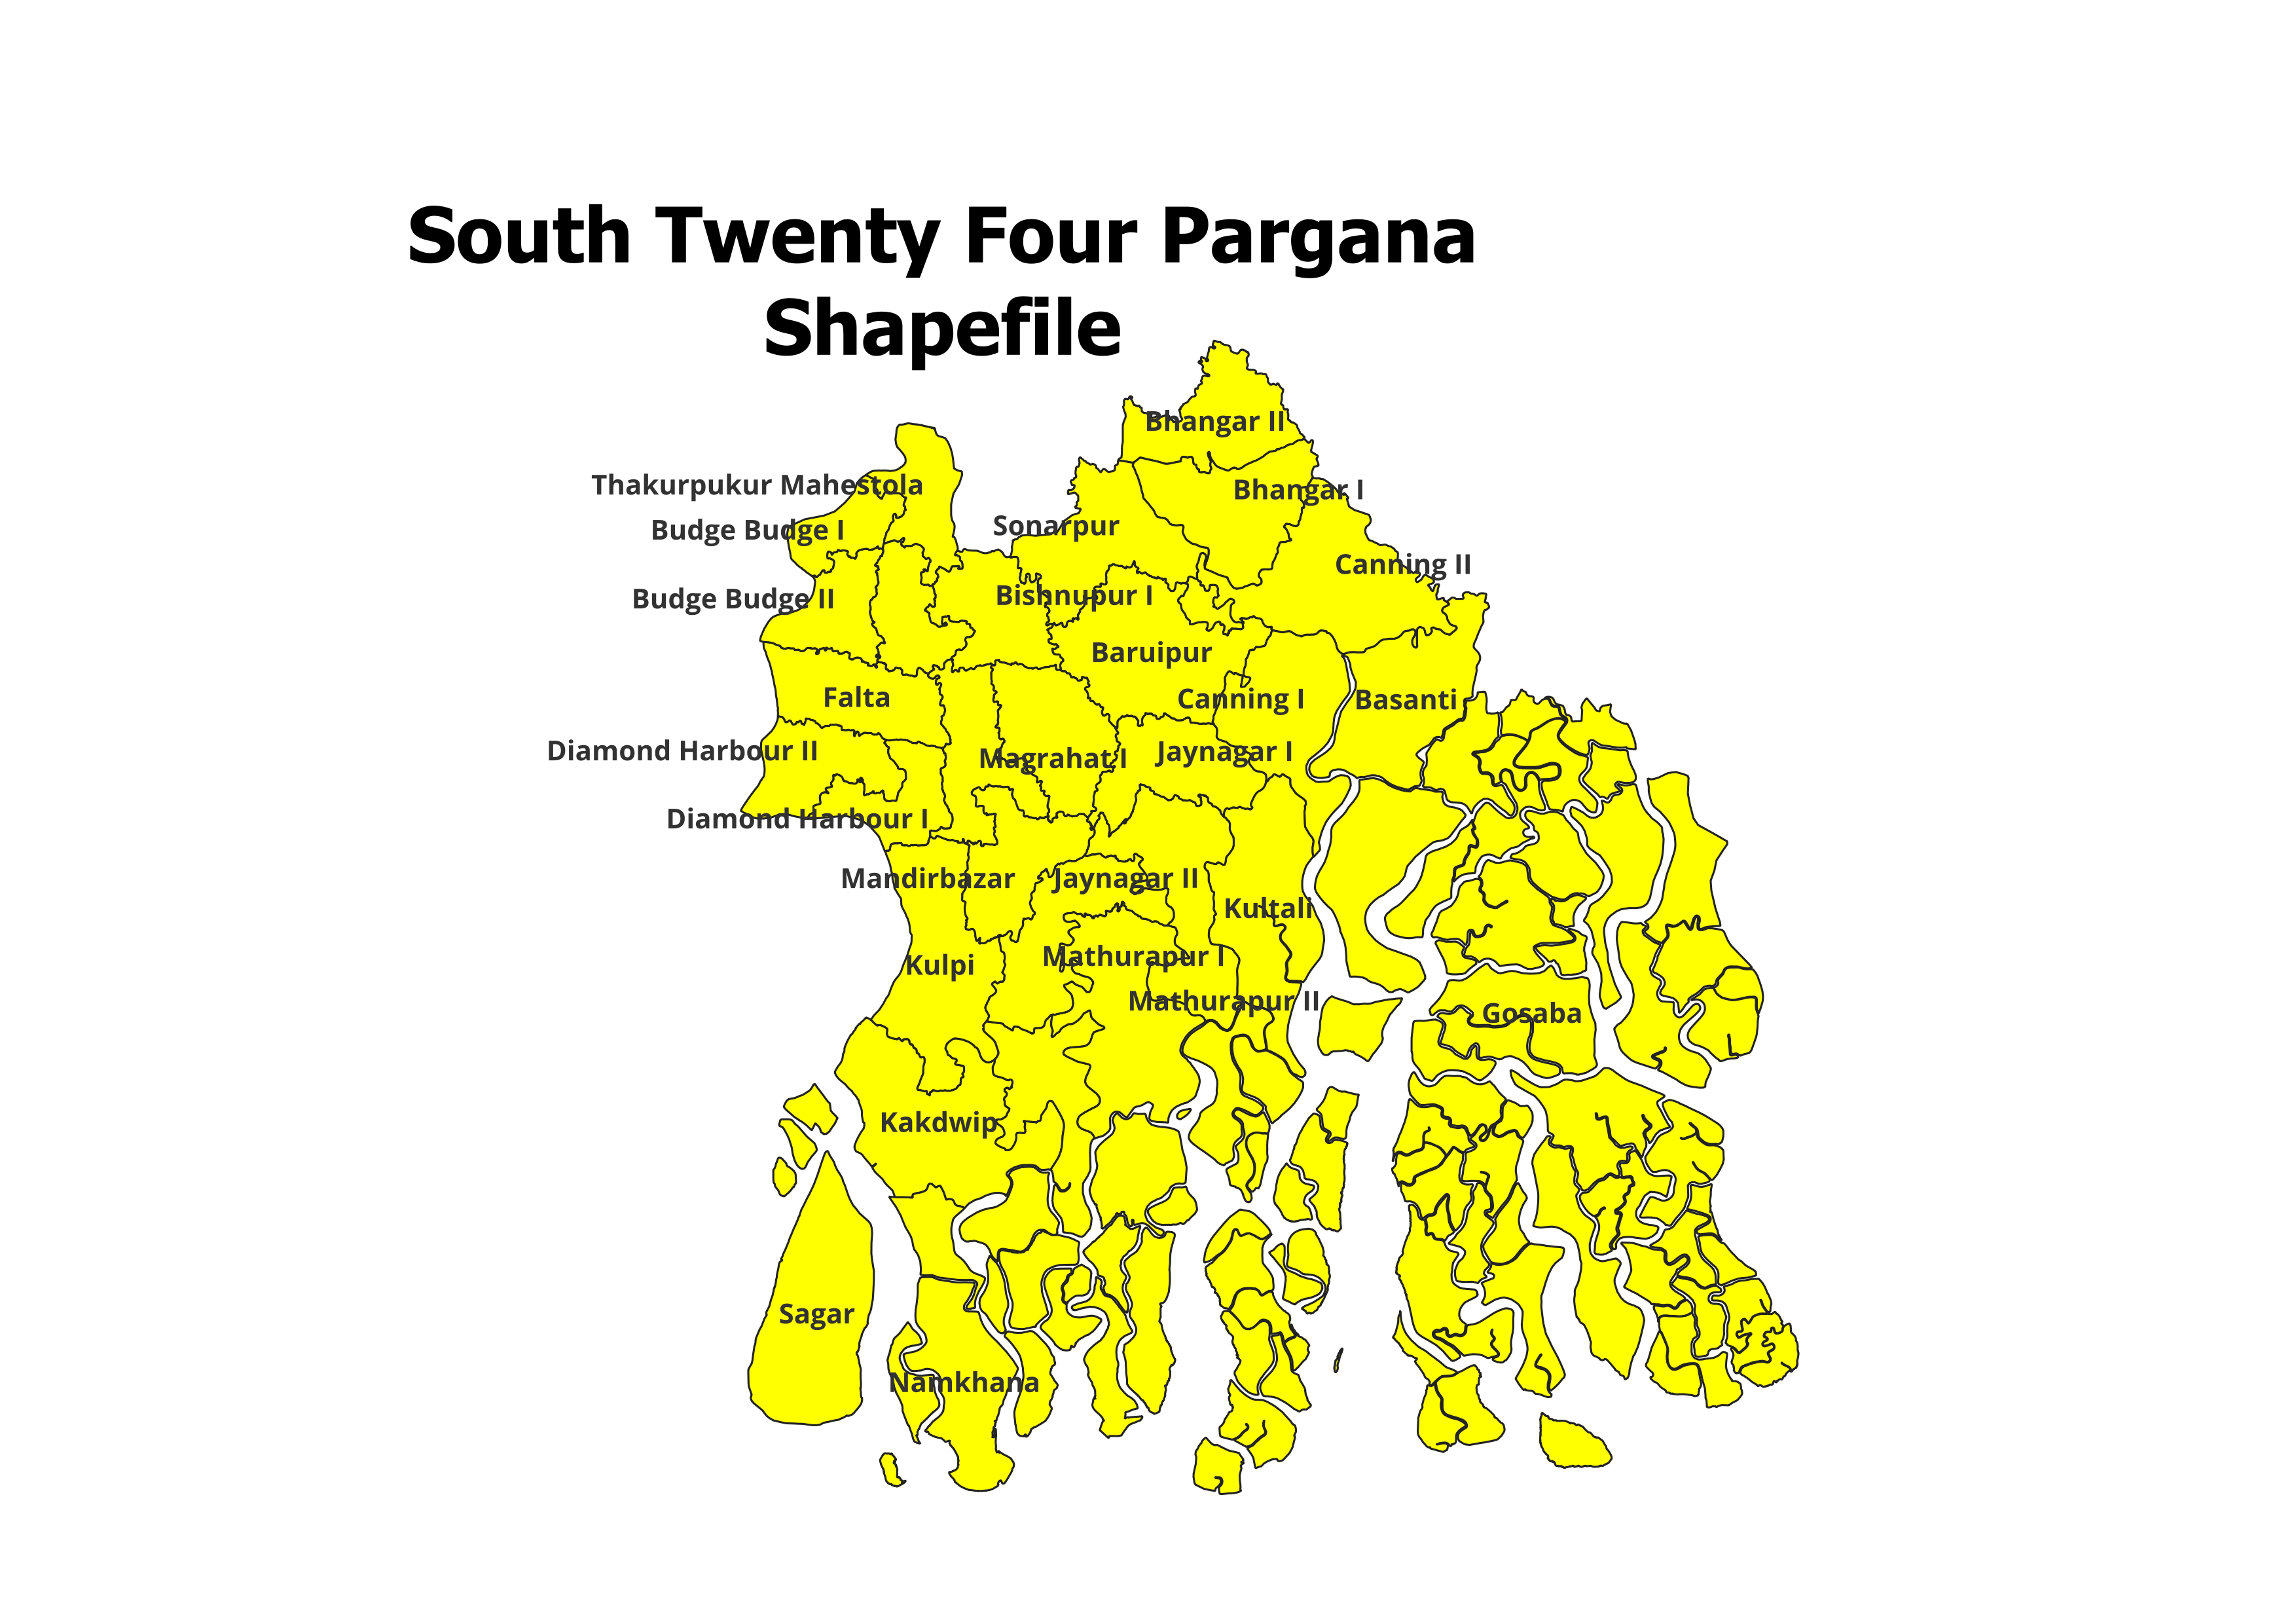 South Twenty Four Pargana Blocks shapefile